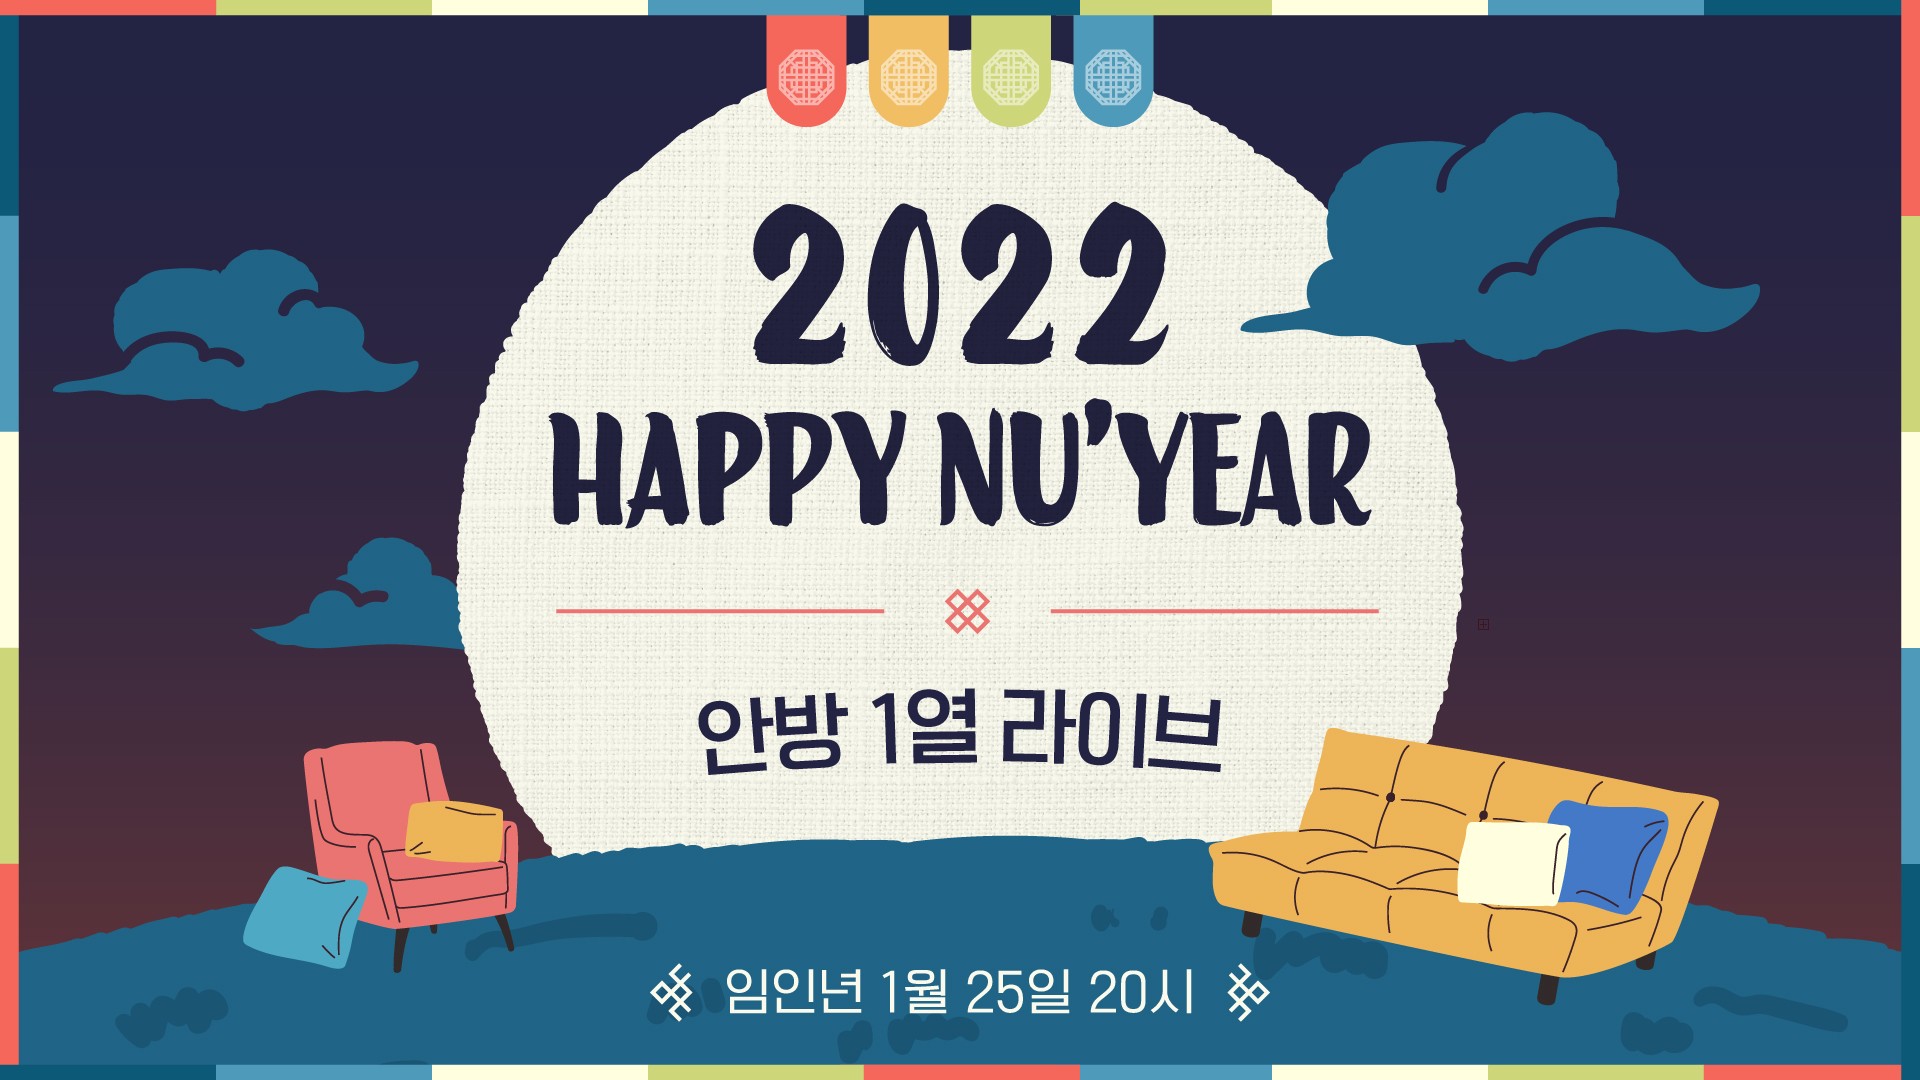 [NU'EST] 2022 HAPPY NU'YEAR : 안방 1열 라이브